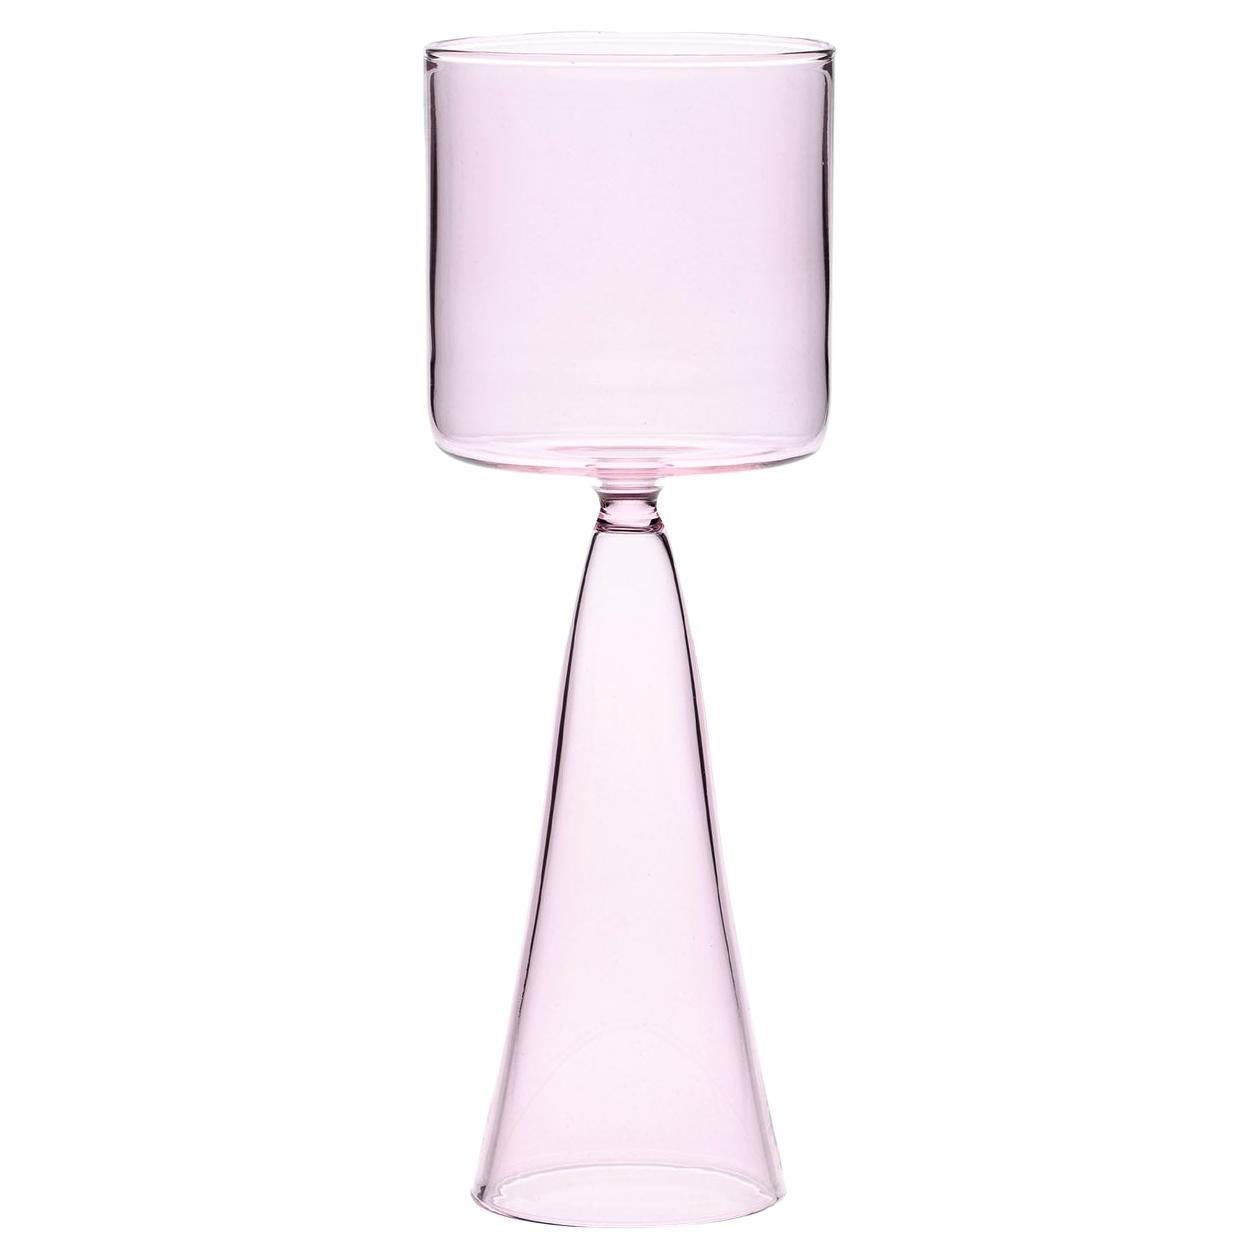 Set Of 4 Light Pink Dolce Vita Wine Glasses For Sale